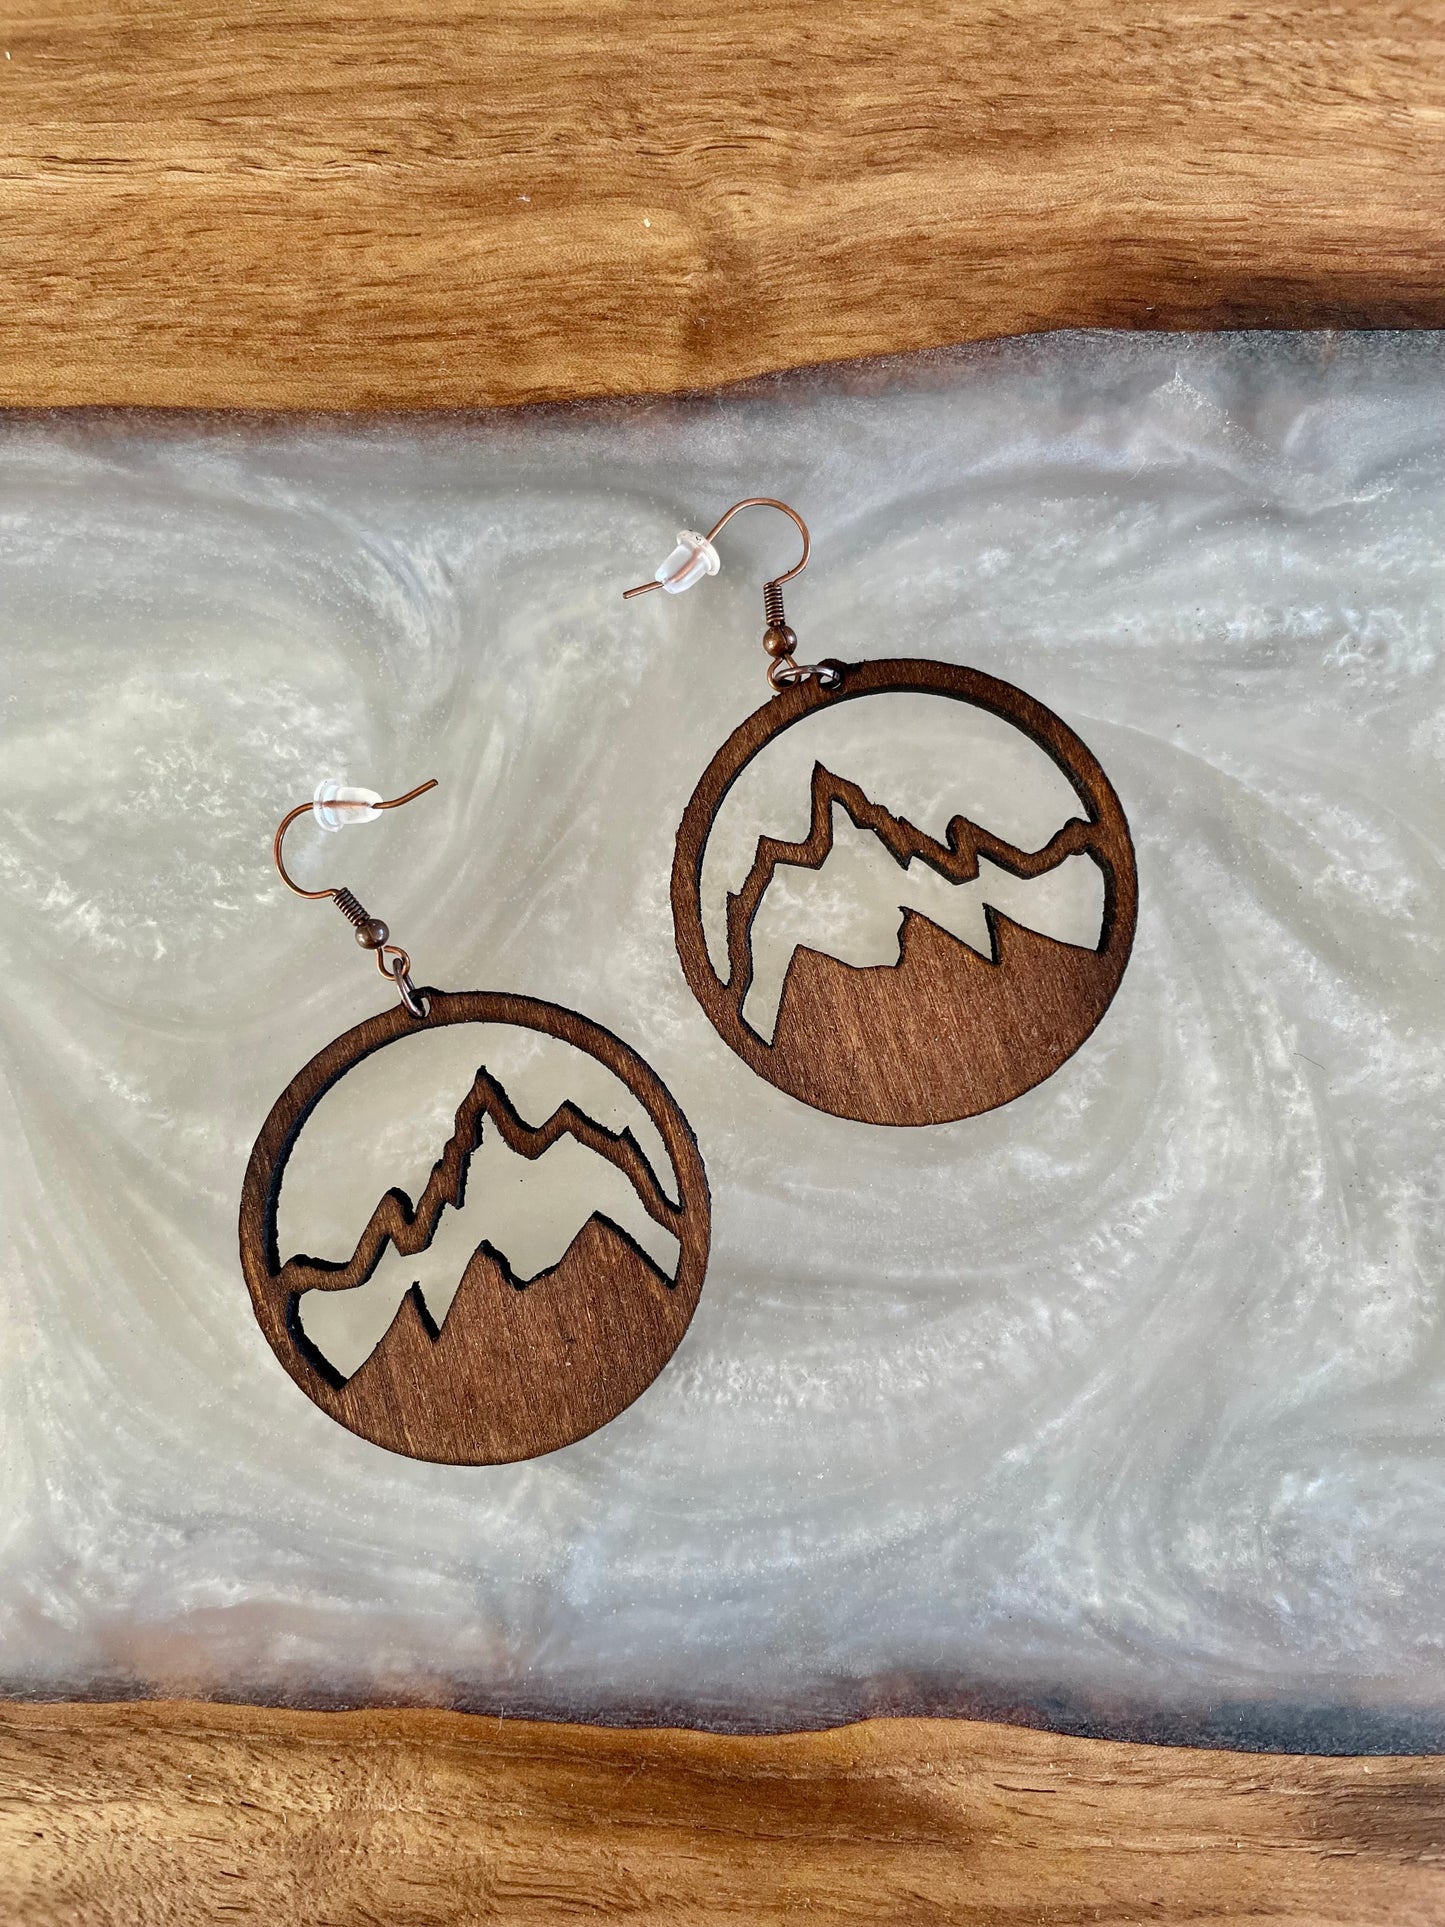 Grand Teton mountain earrings